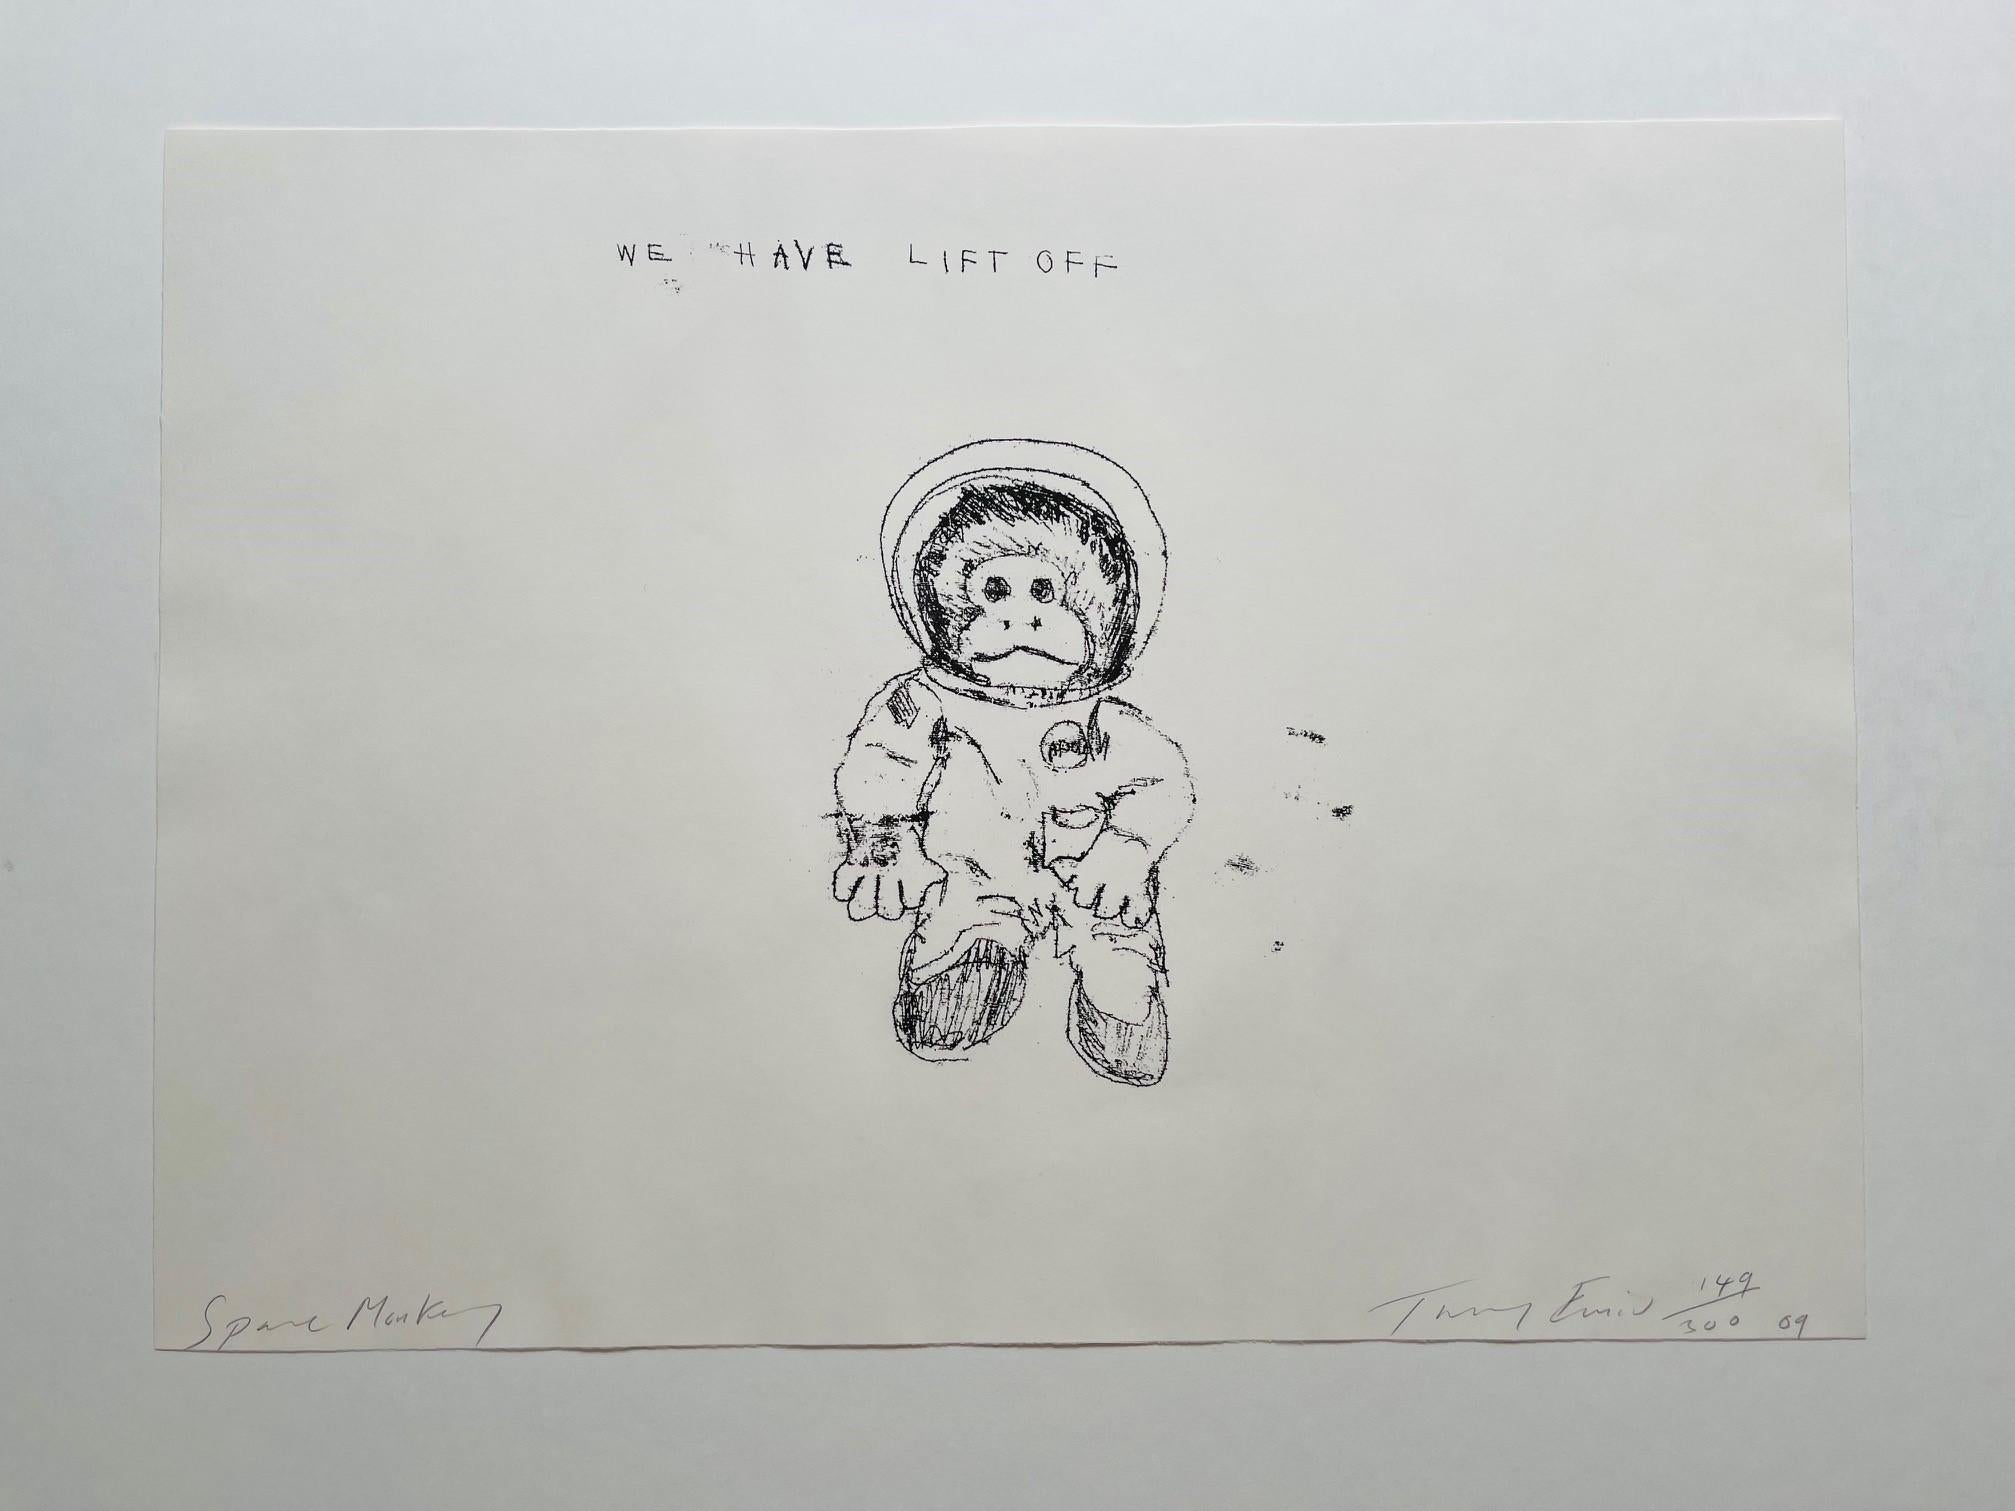 Space Monkey - Nous avons Lift Off (signé) (2009), 2009
Lithographie signée
16 1/10 × 22 1/5 in
41 × 56.5 cm
Edition de 300